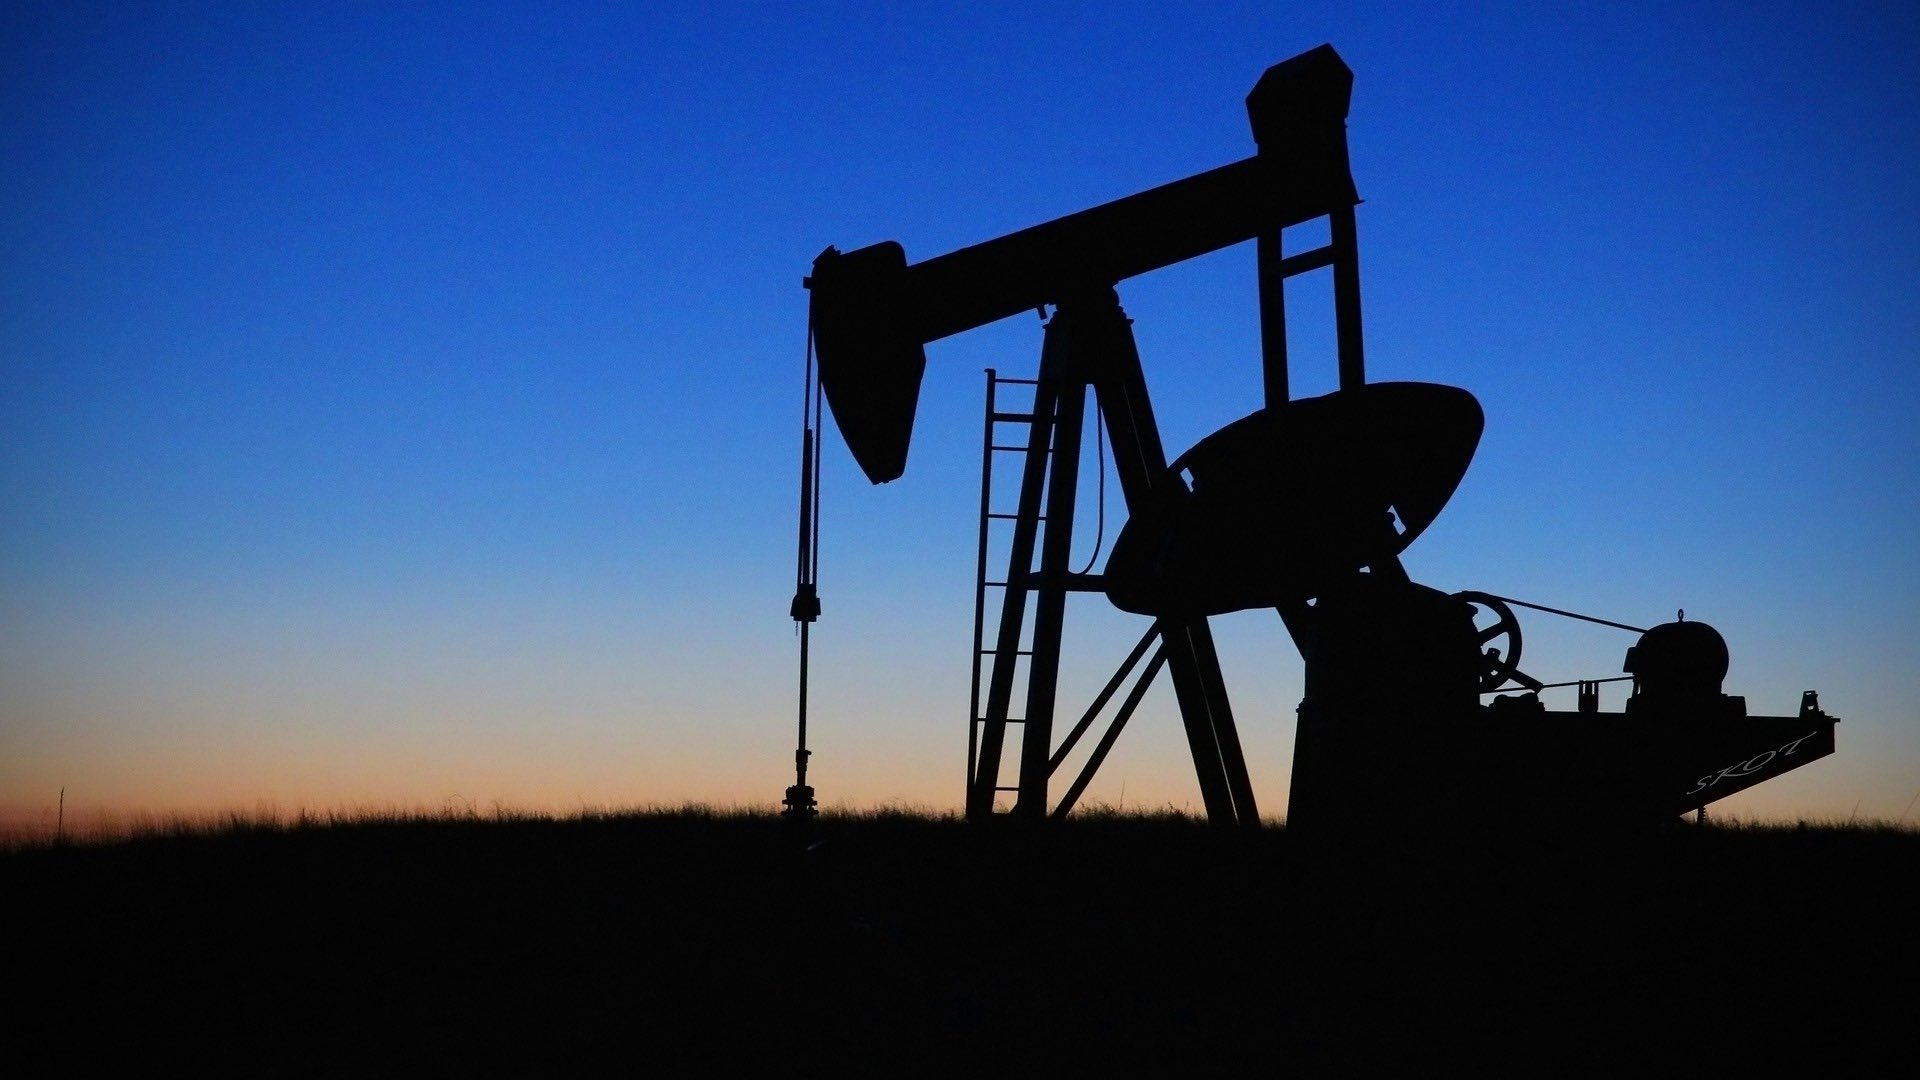 Цены на нефть Brent приблизились к отметке 95 долларов за баррель, рост продолжается